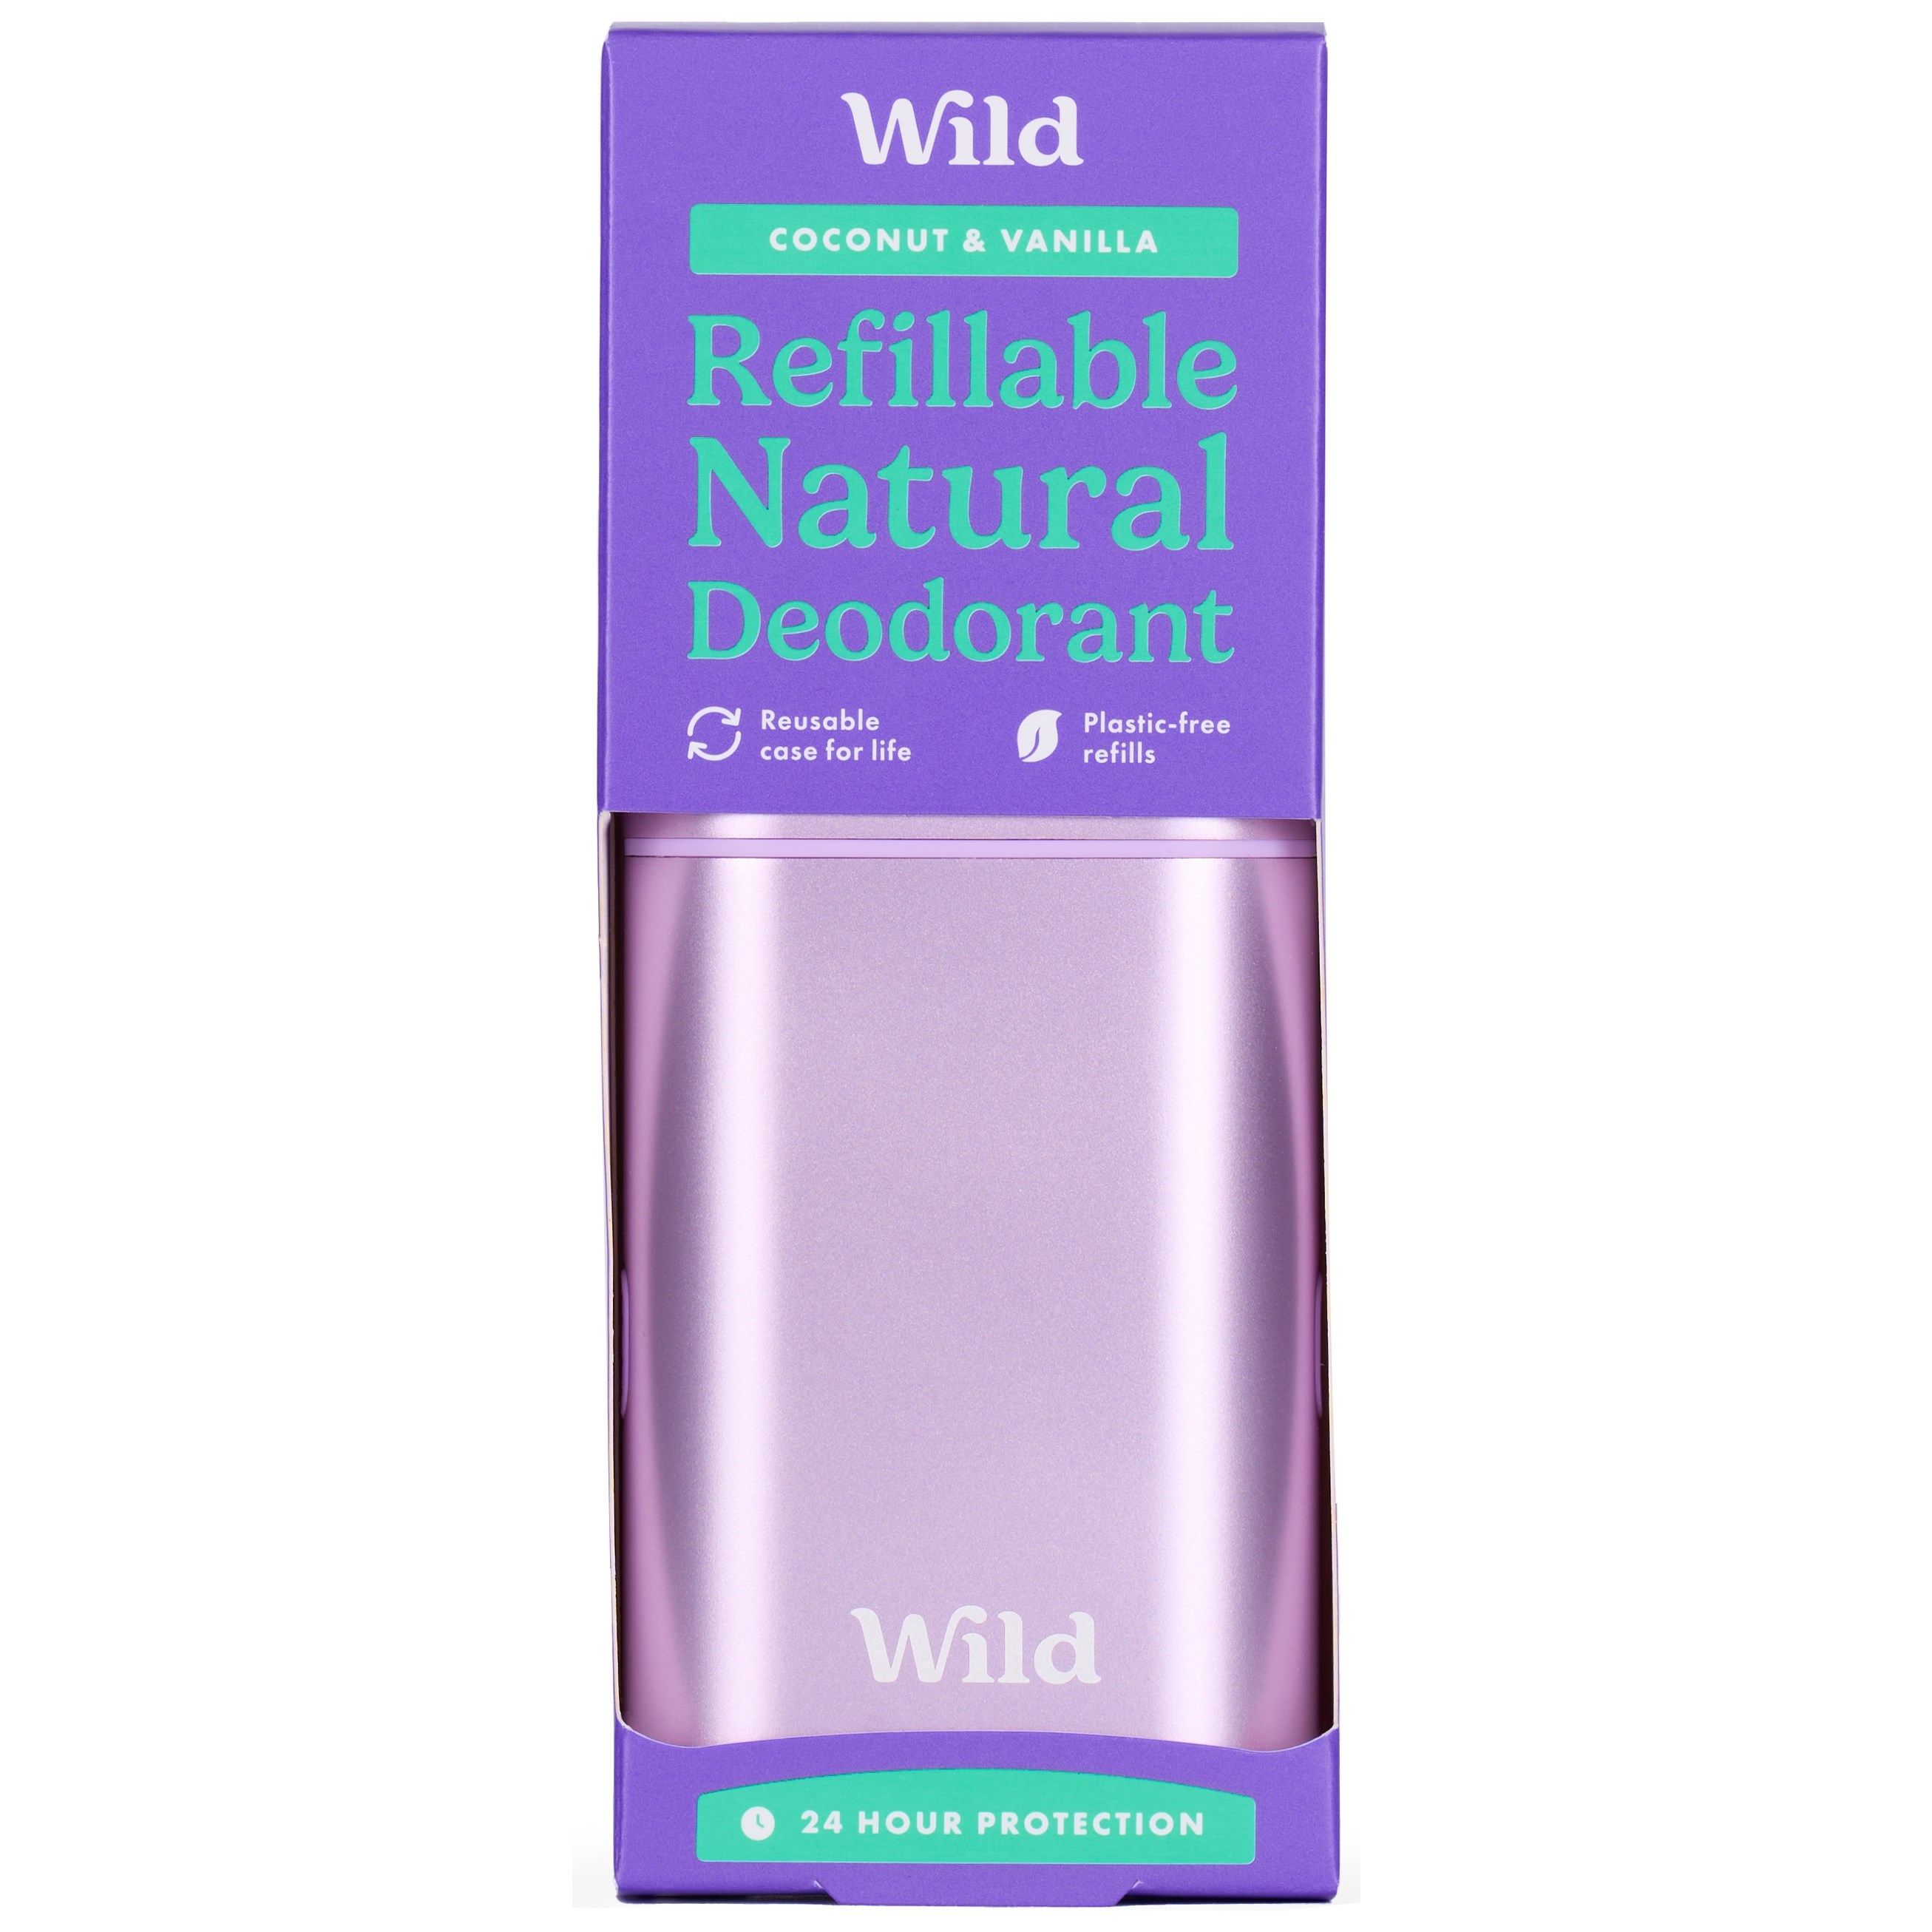 Bilde av Wild Refillable, Natural Deodorant Coconut & Vanilla 40 G